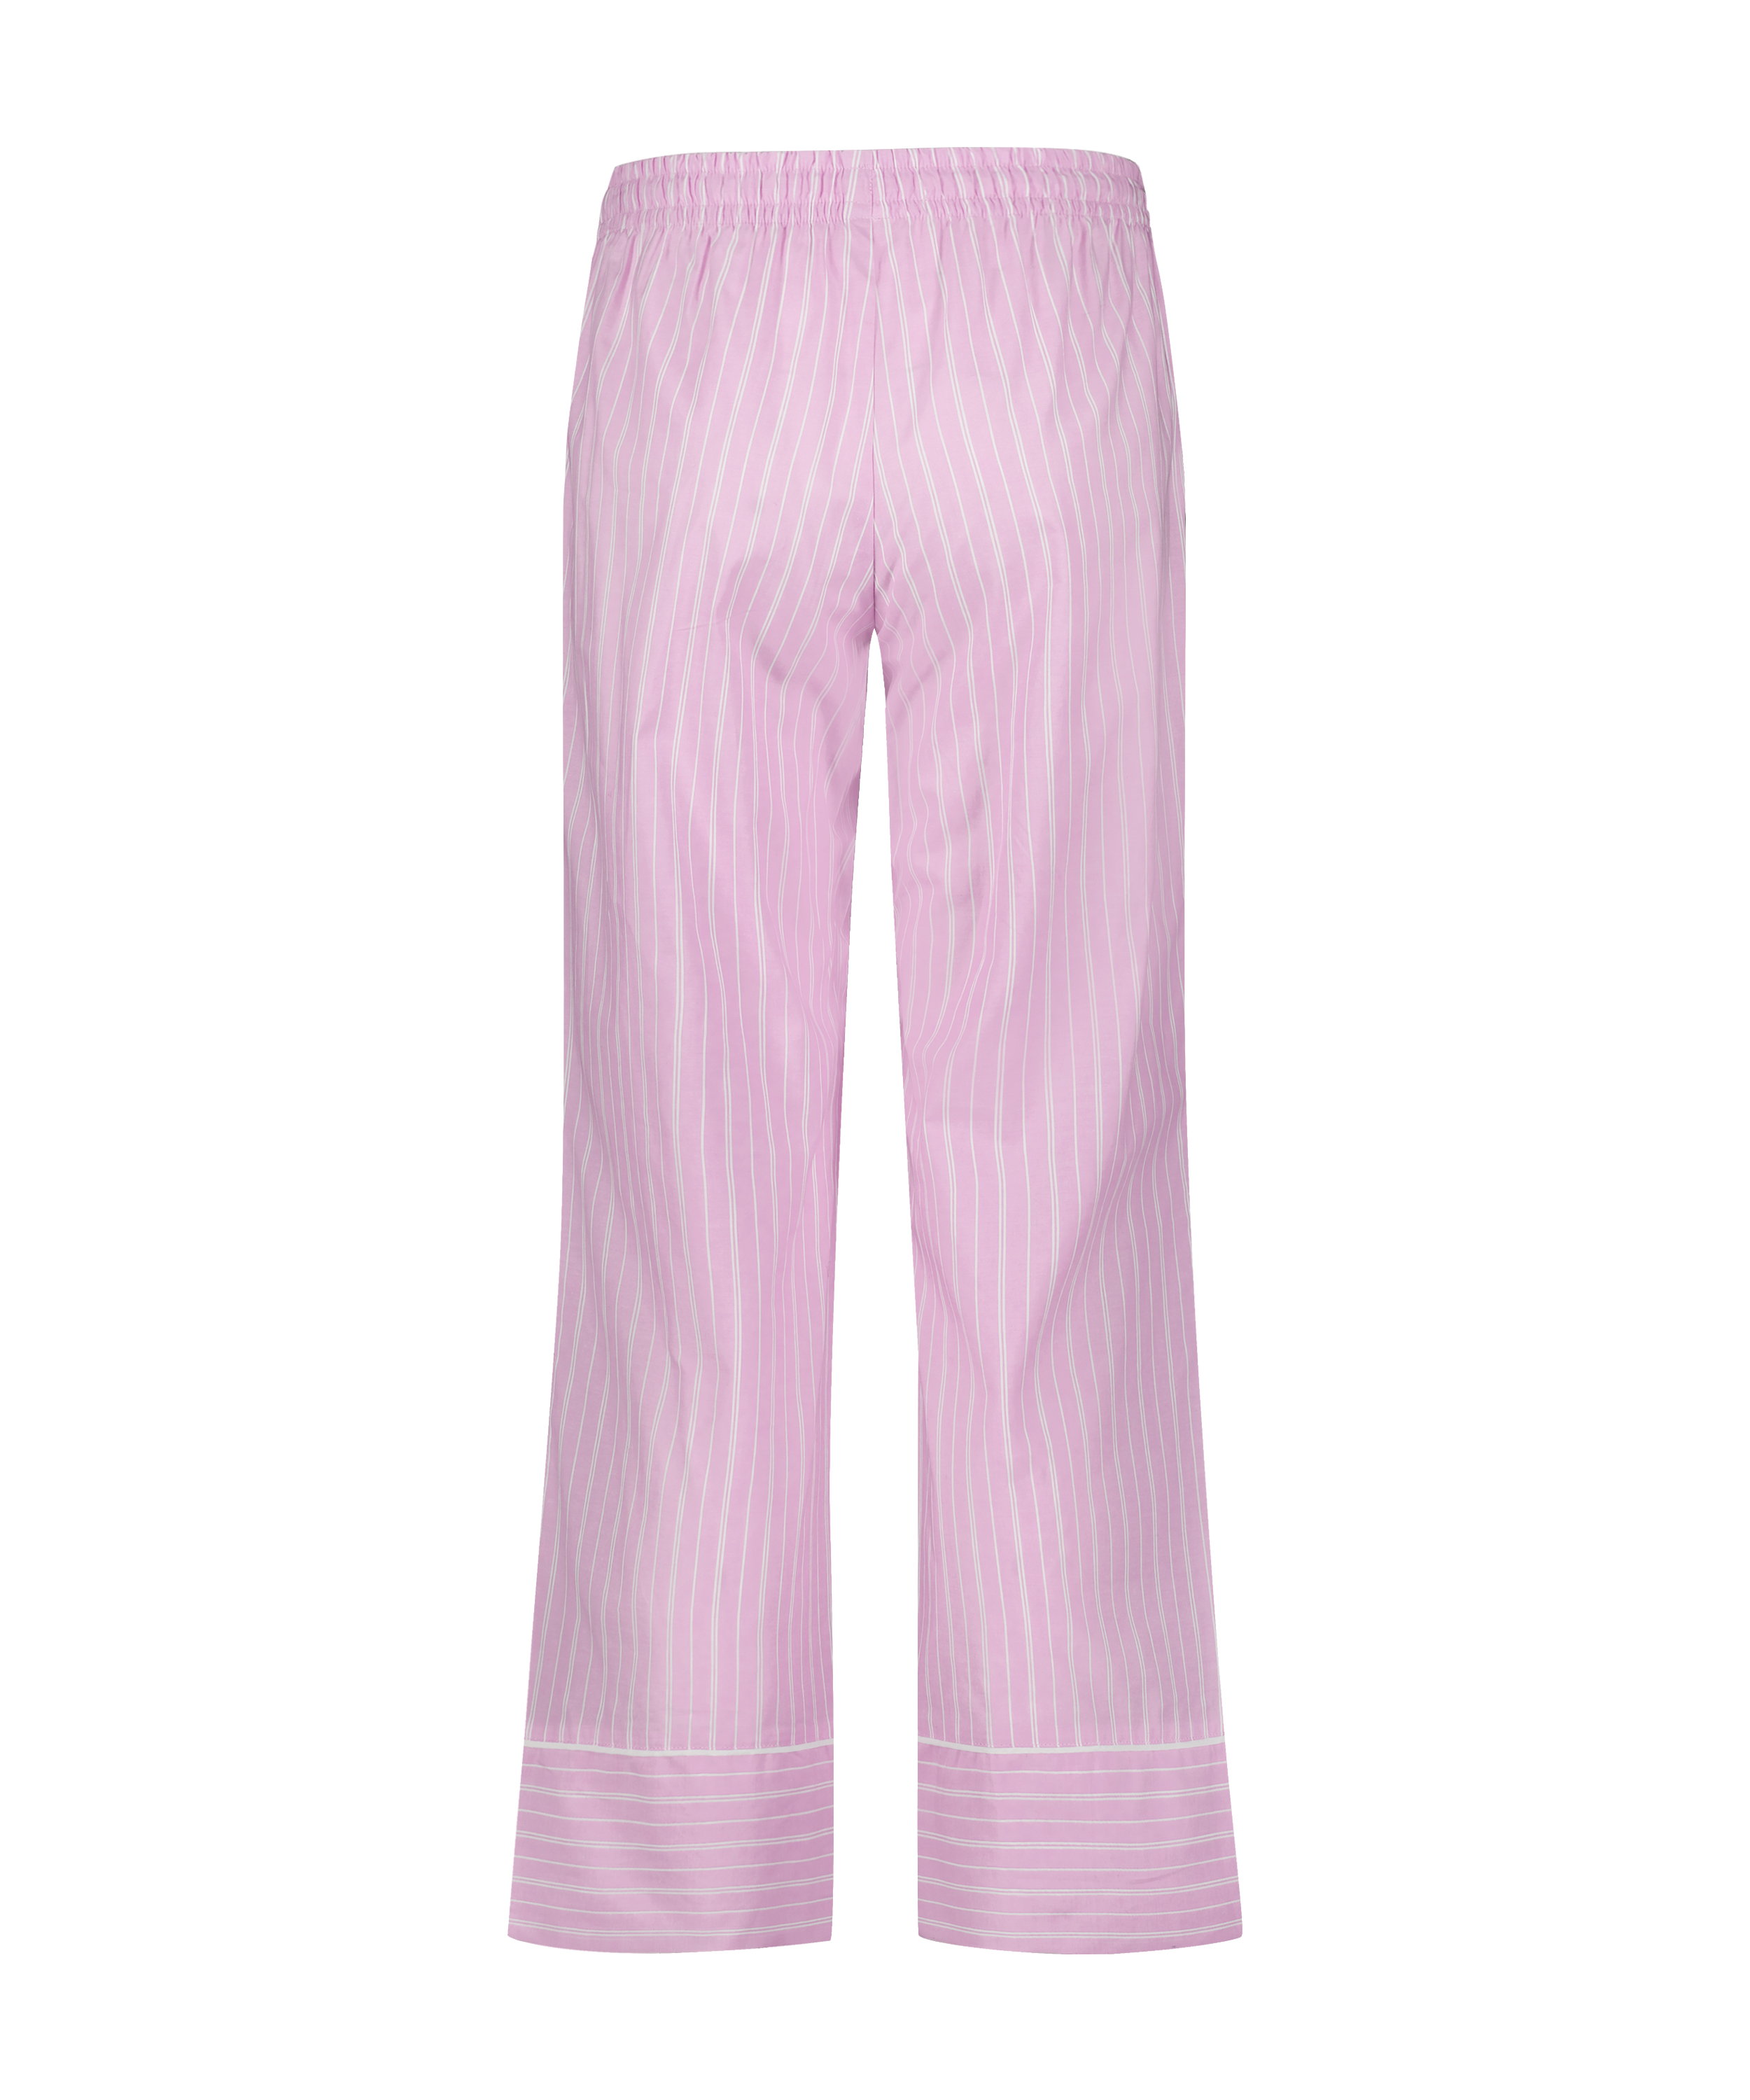 Pantalón de pijama Stripy, Rosa, main